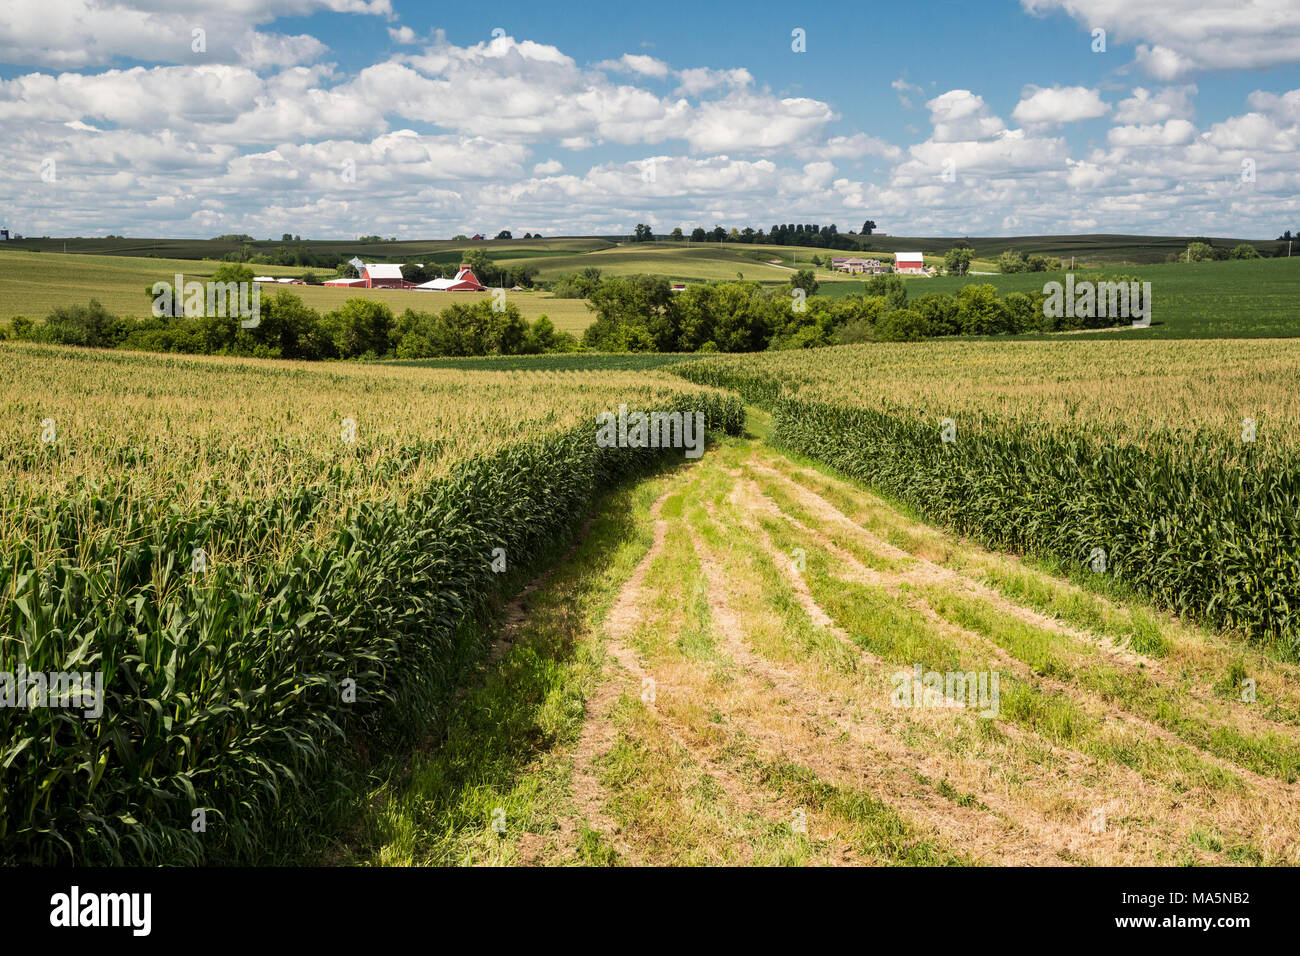 Les fermes de l'Iowa, près de Worthington, Iowa. Un champ à l'avant. Banque D'Images